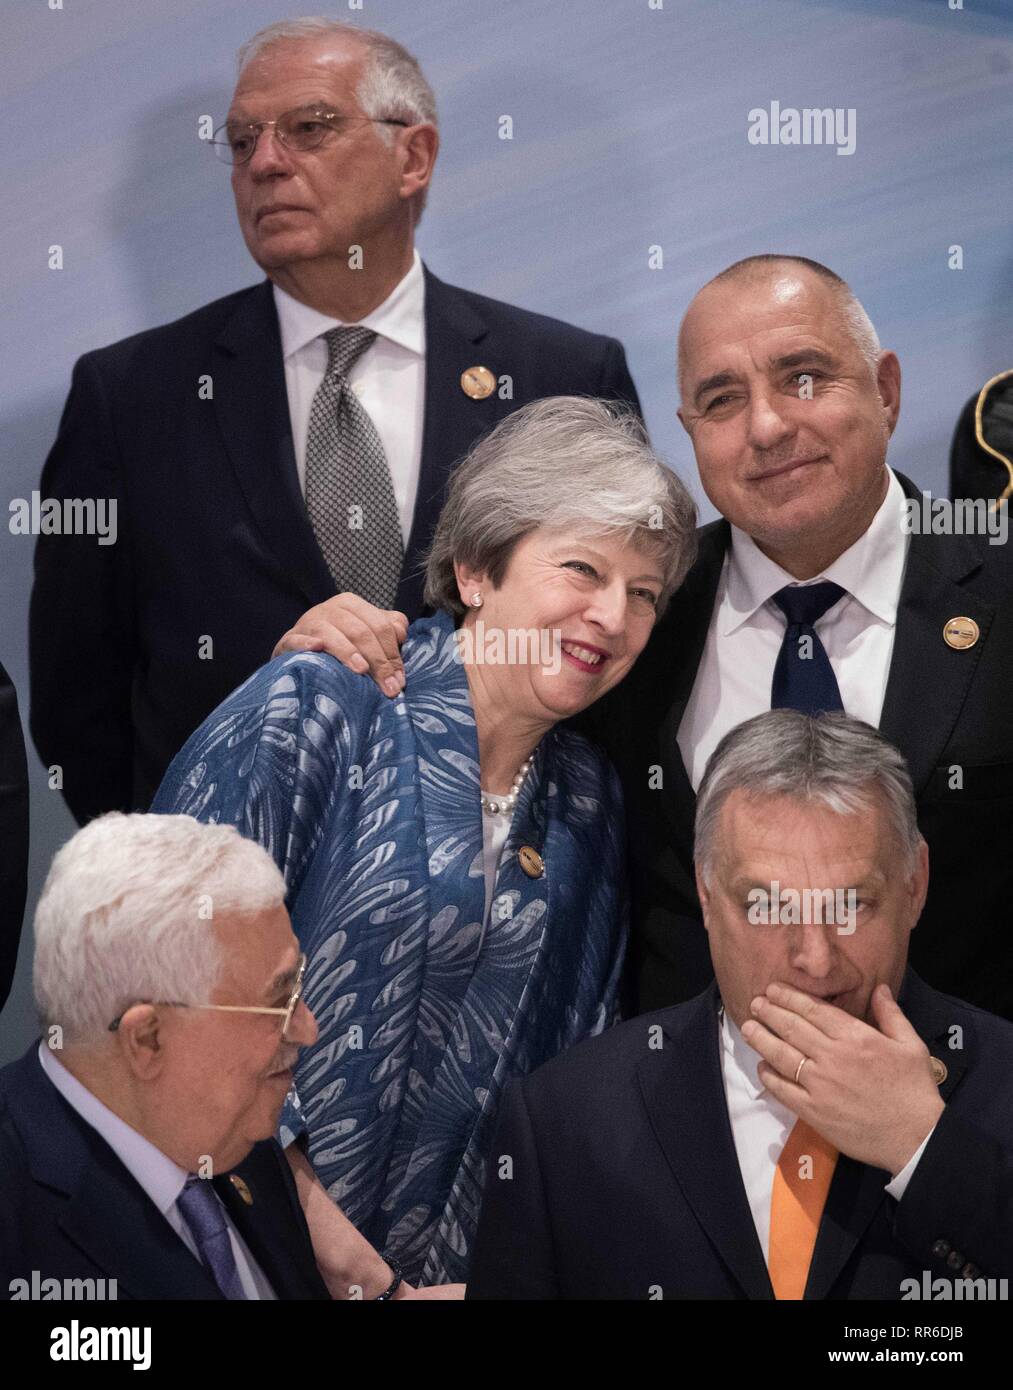 Premier ministre Theresa May est embrassé par le Premier Ministre de la Bulgarie Boyko Borissov comme elle fréquente l'UE-Ligue des États arabes sommet de Charm el-Cheikh, en Égypte. Banque D'Images